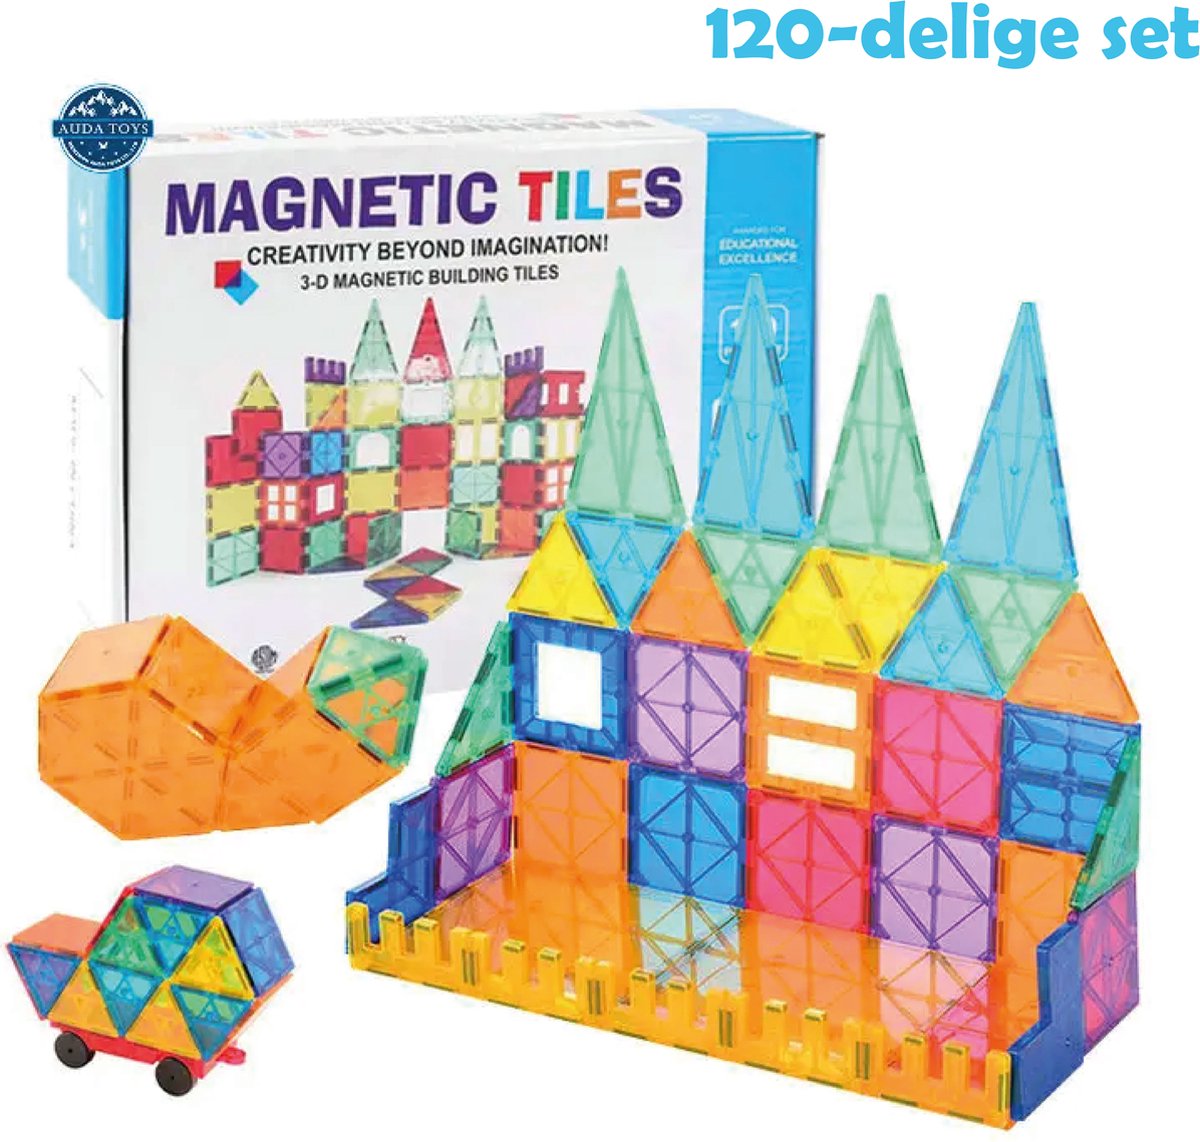 Magnetic Tiles - Lias Toys - Magnetisch Speelgoed – 120 stuks